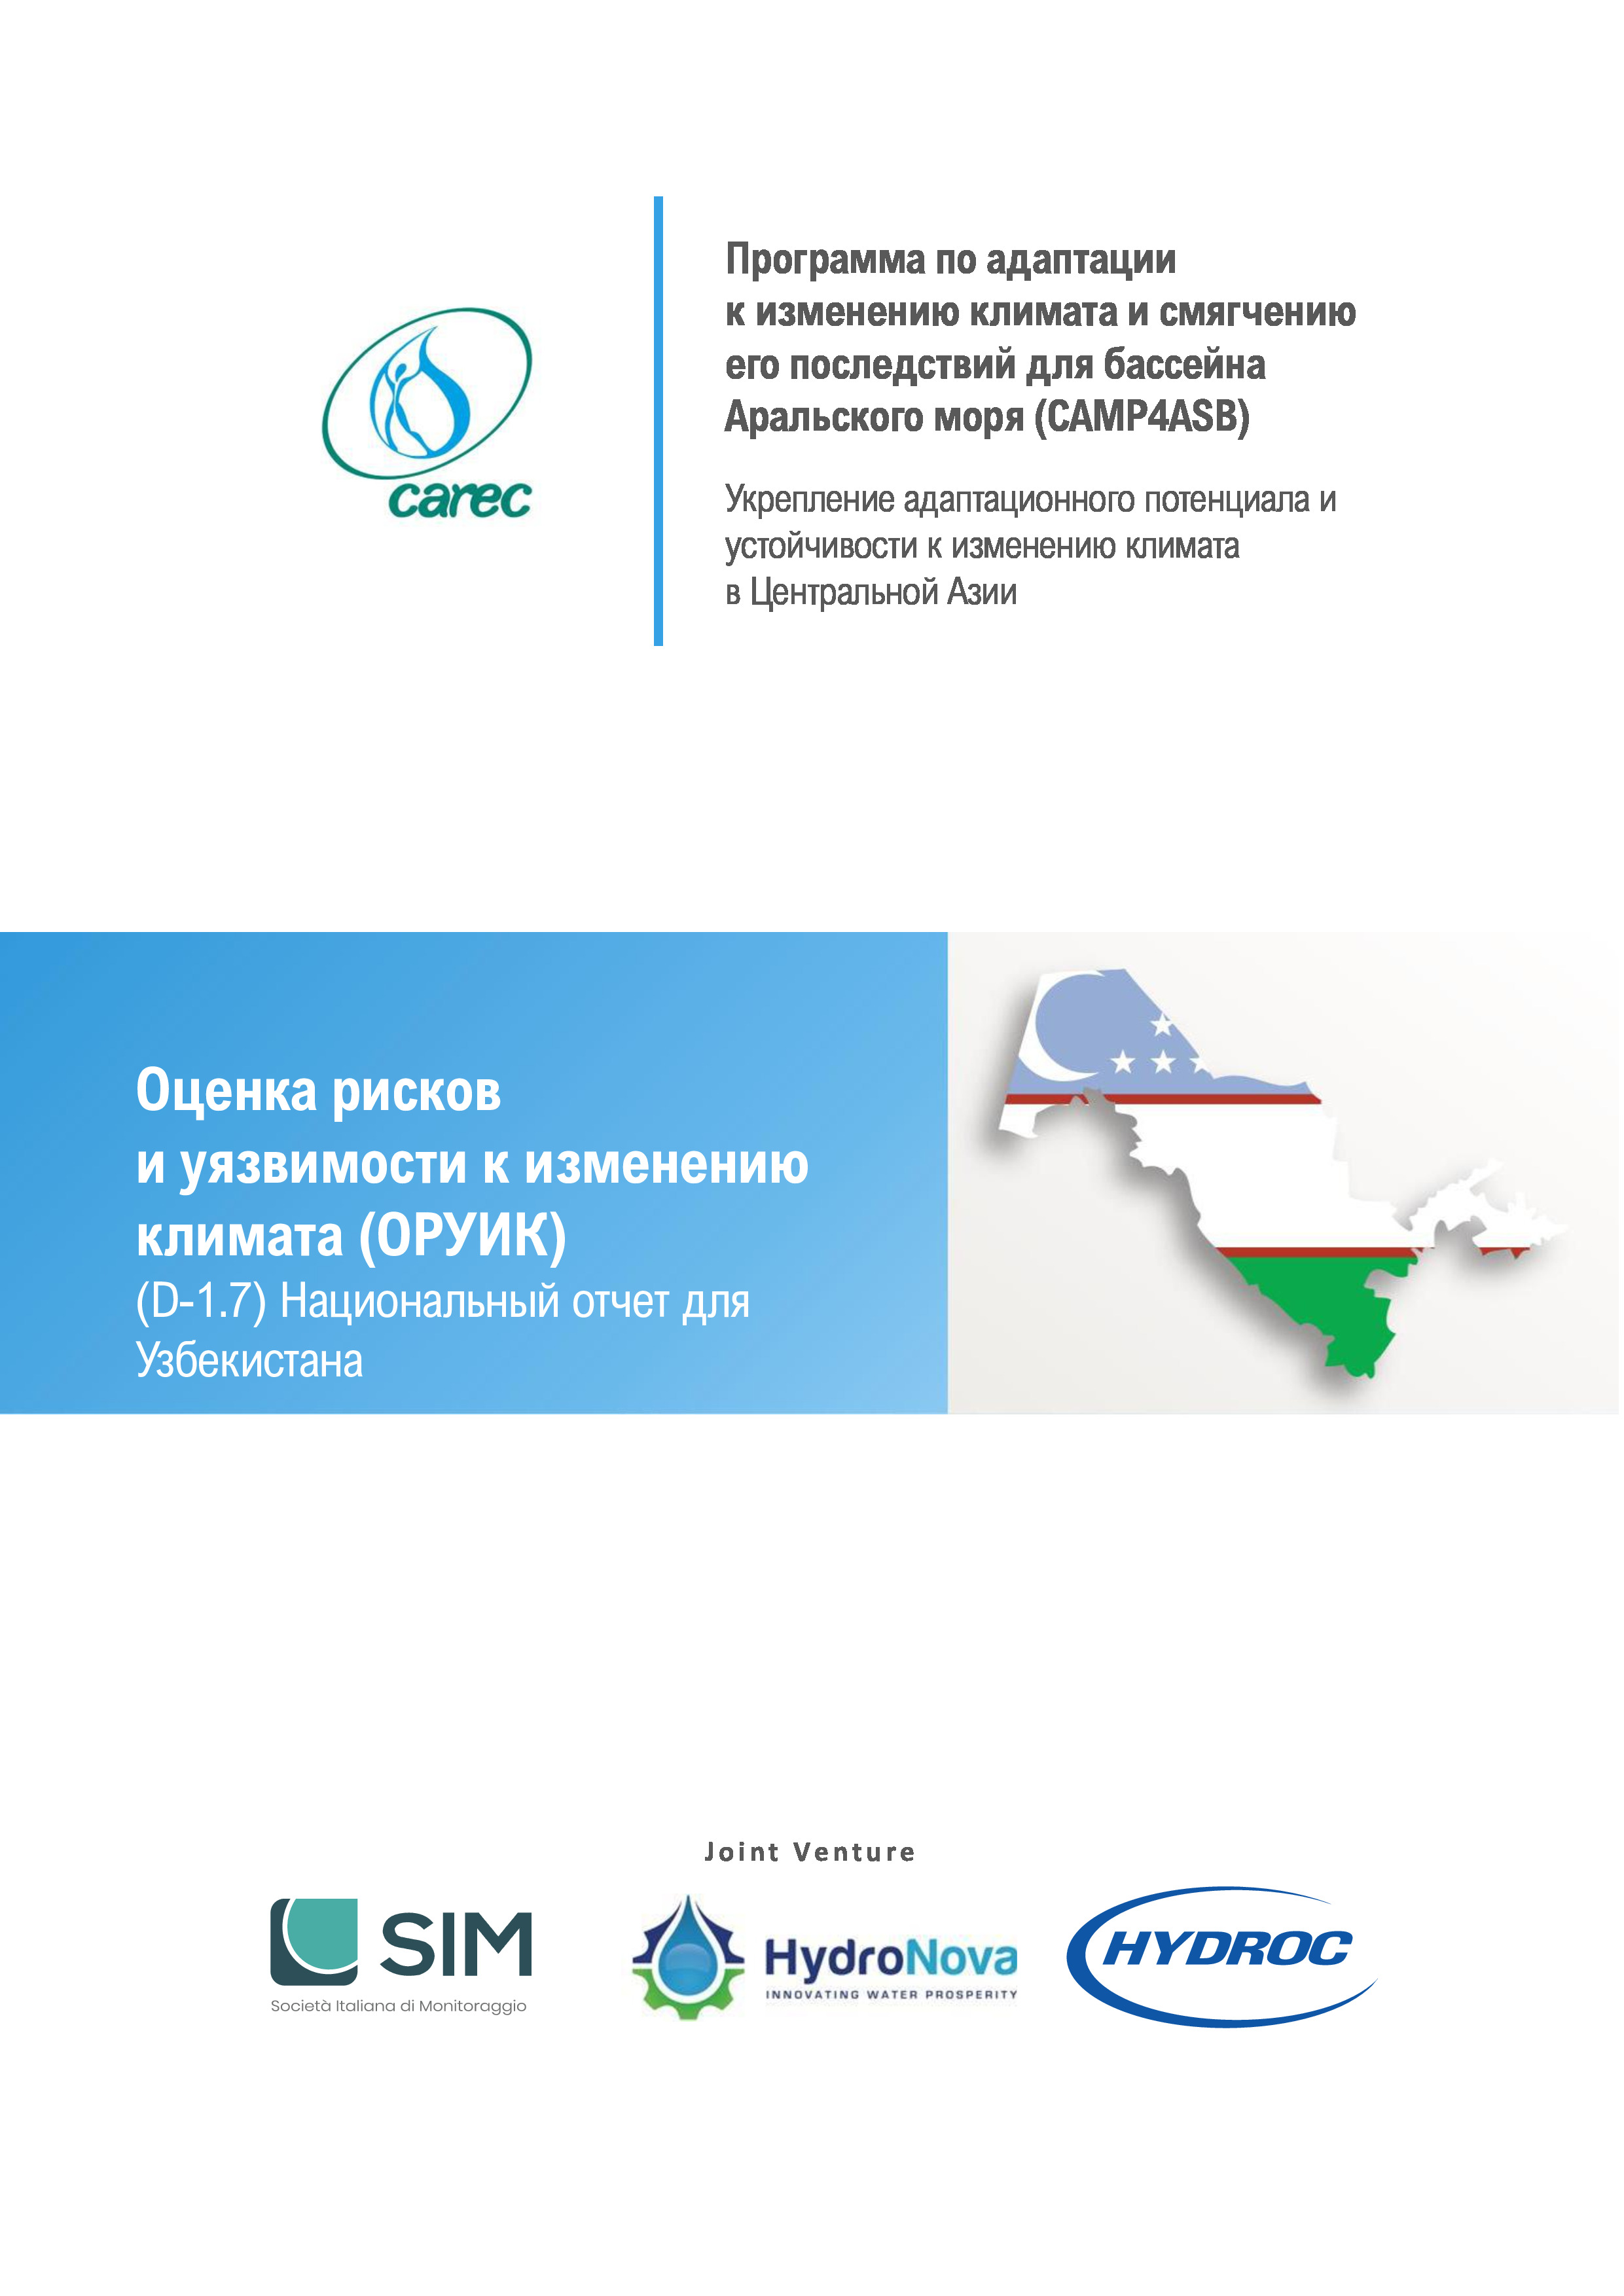 Оценка рисков и уязвимости к изменению климата (ОРУИК). Национальный отчет для Узбекистана, 2021